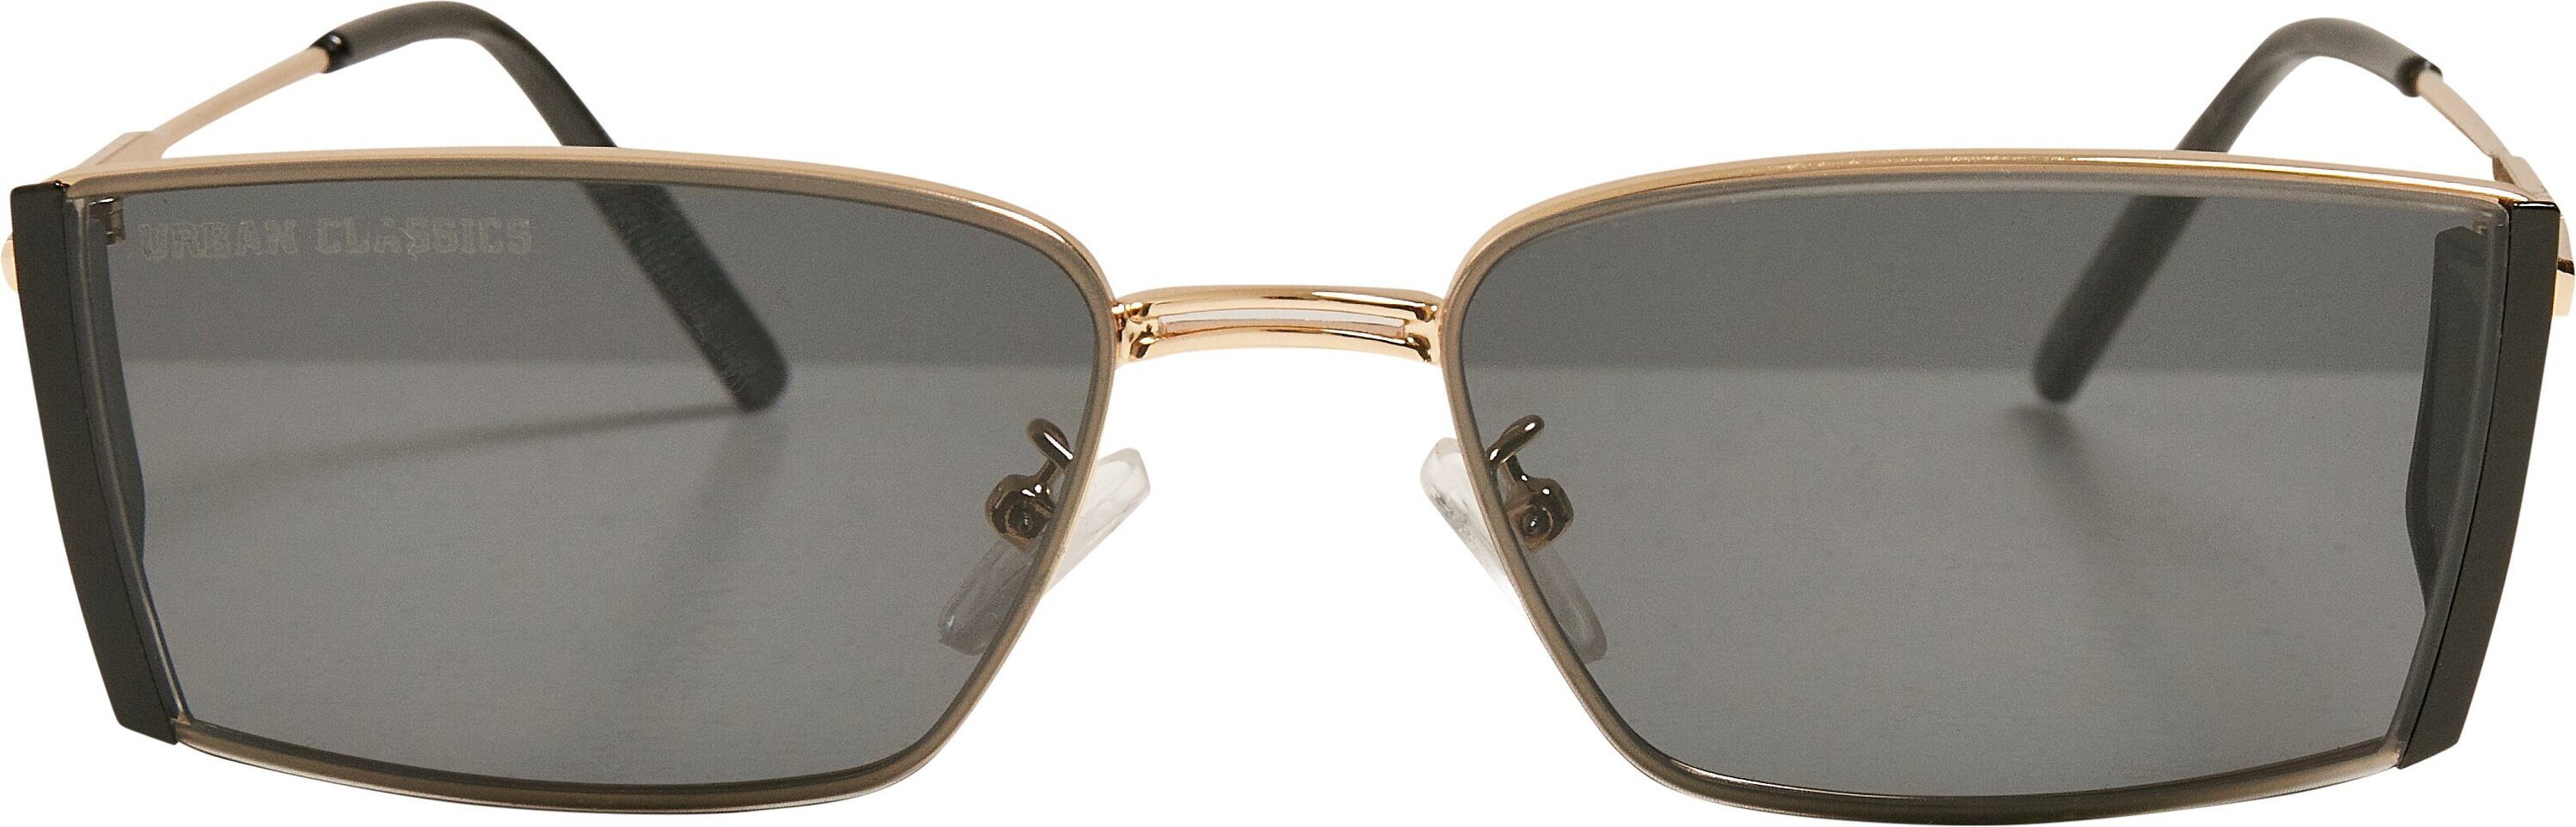 URBAN CLASSICS Sonnenbrille Unisex Sunglasses black/gold Ohio